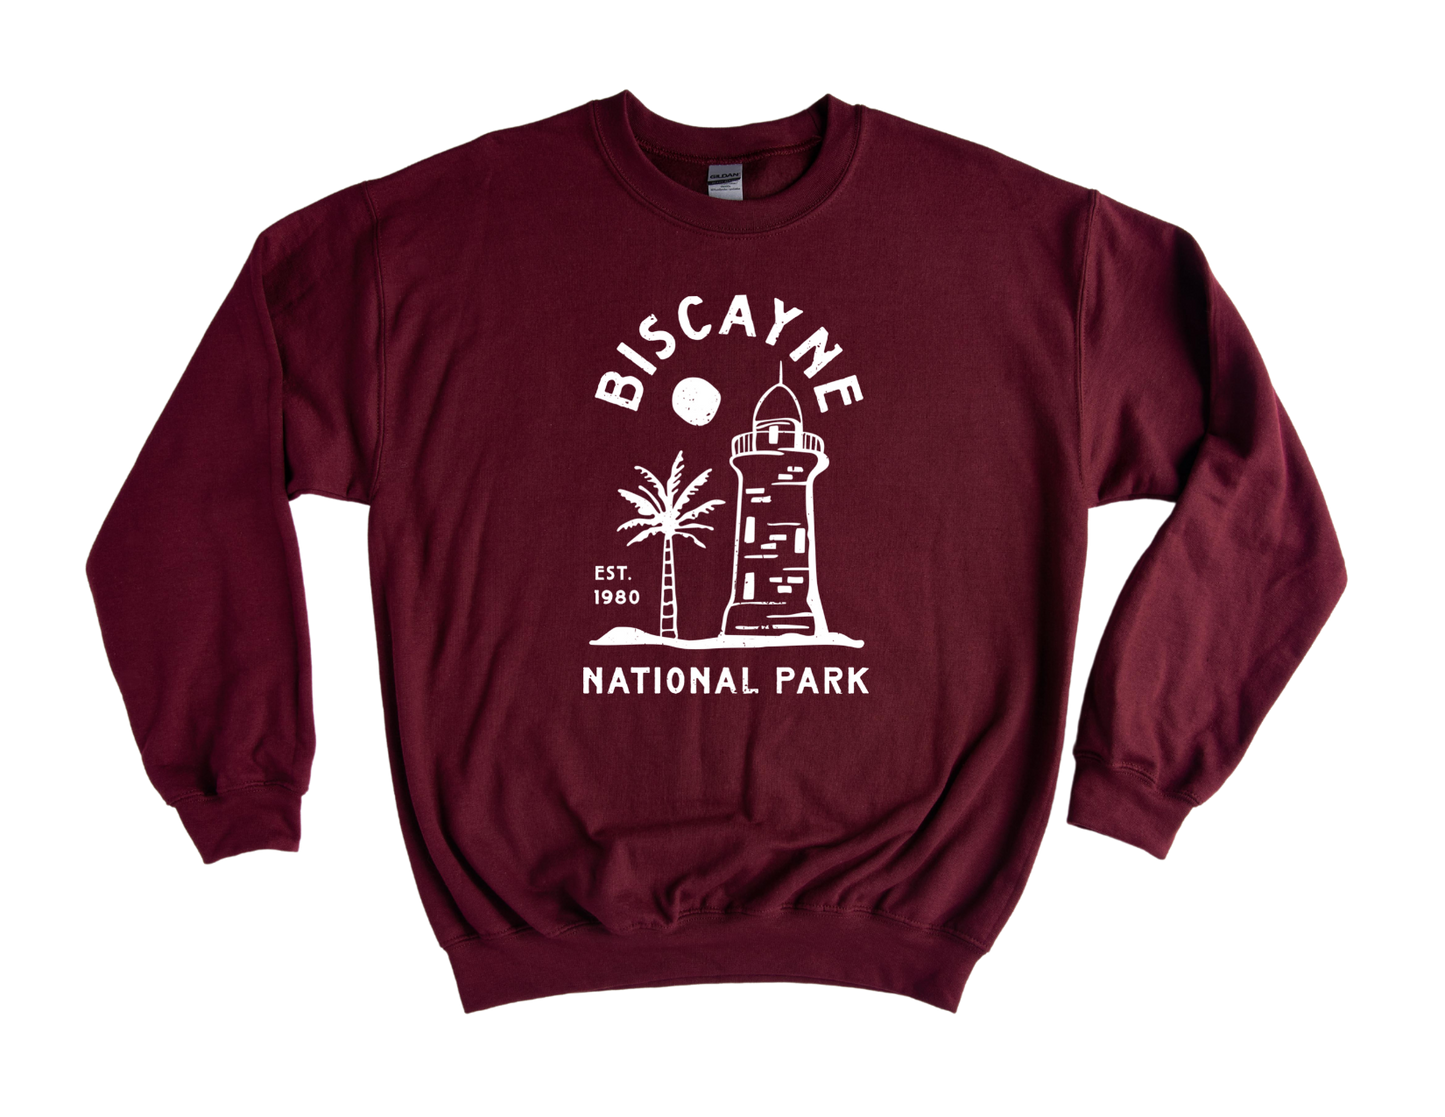 Biscayne National Park Unisex Sweatshirt